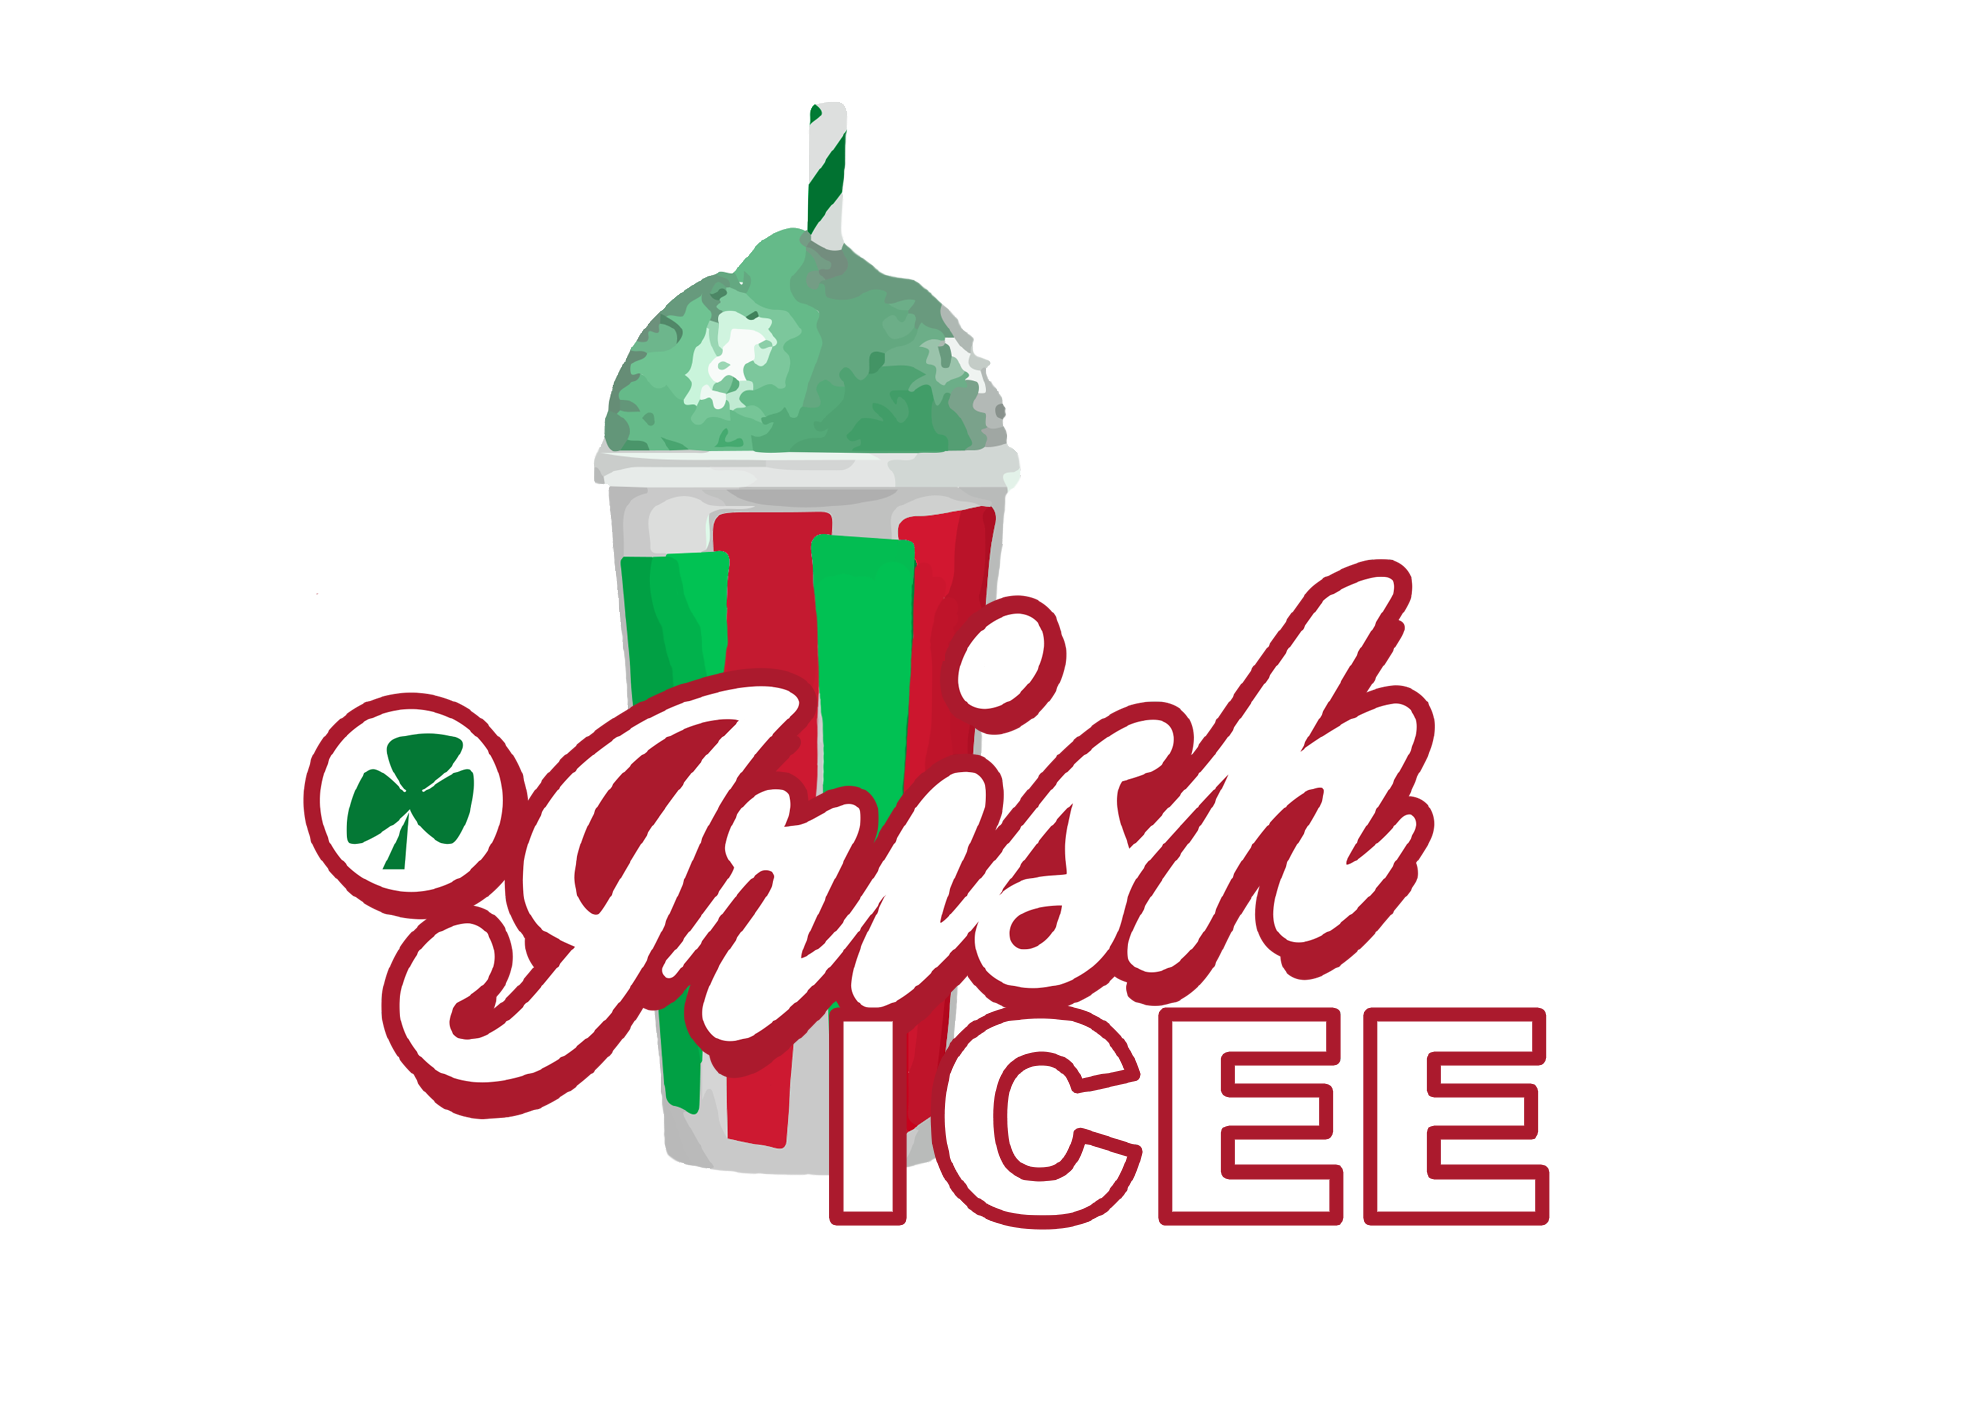 Icee Irish